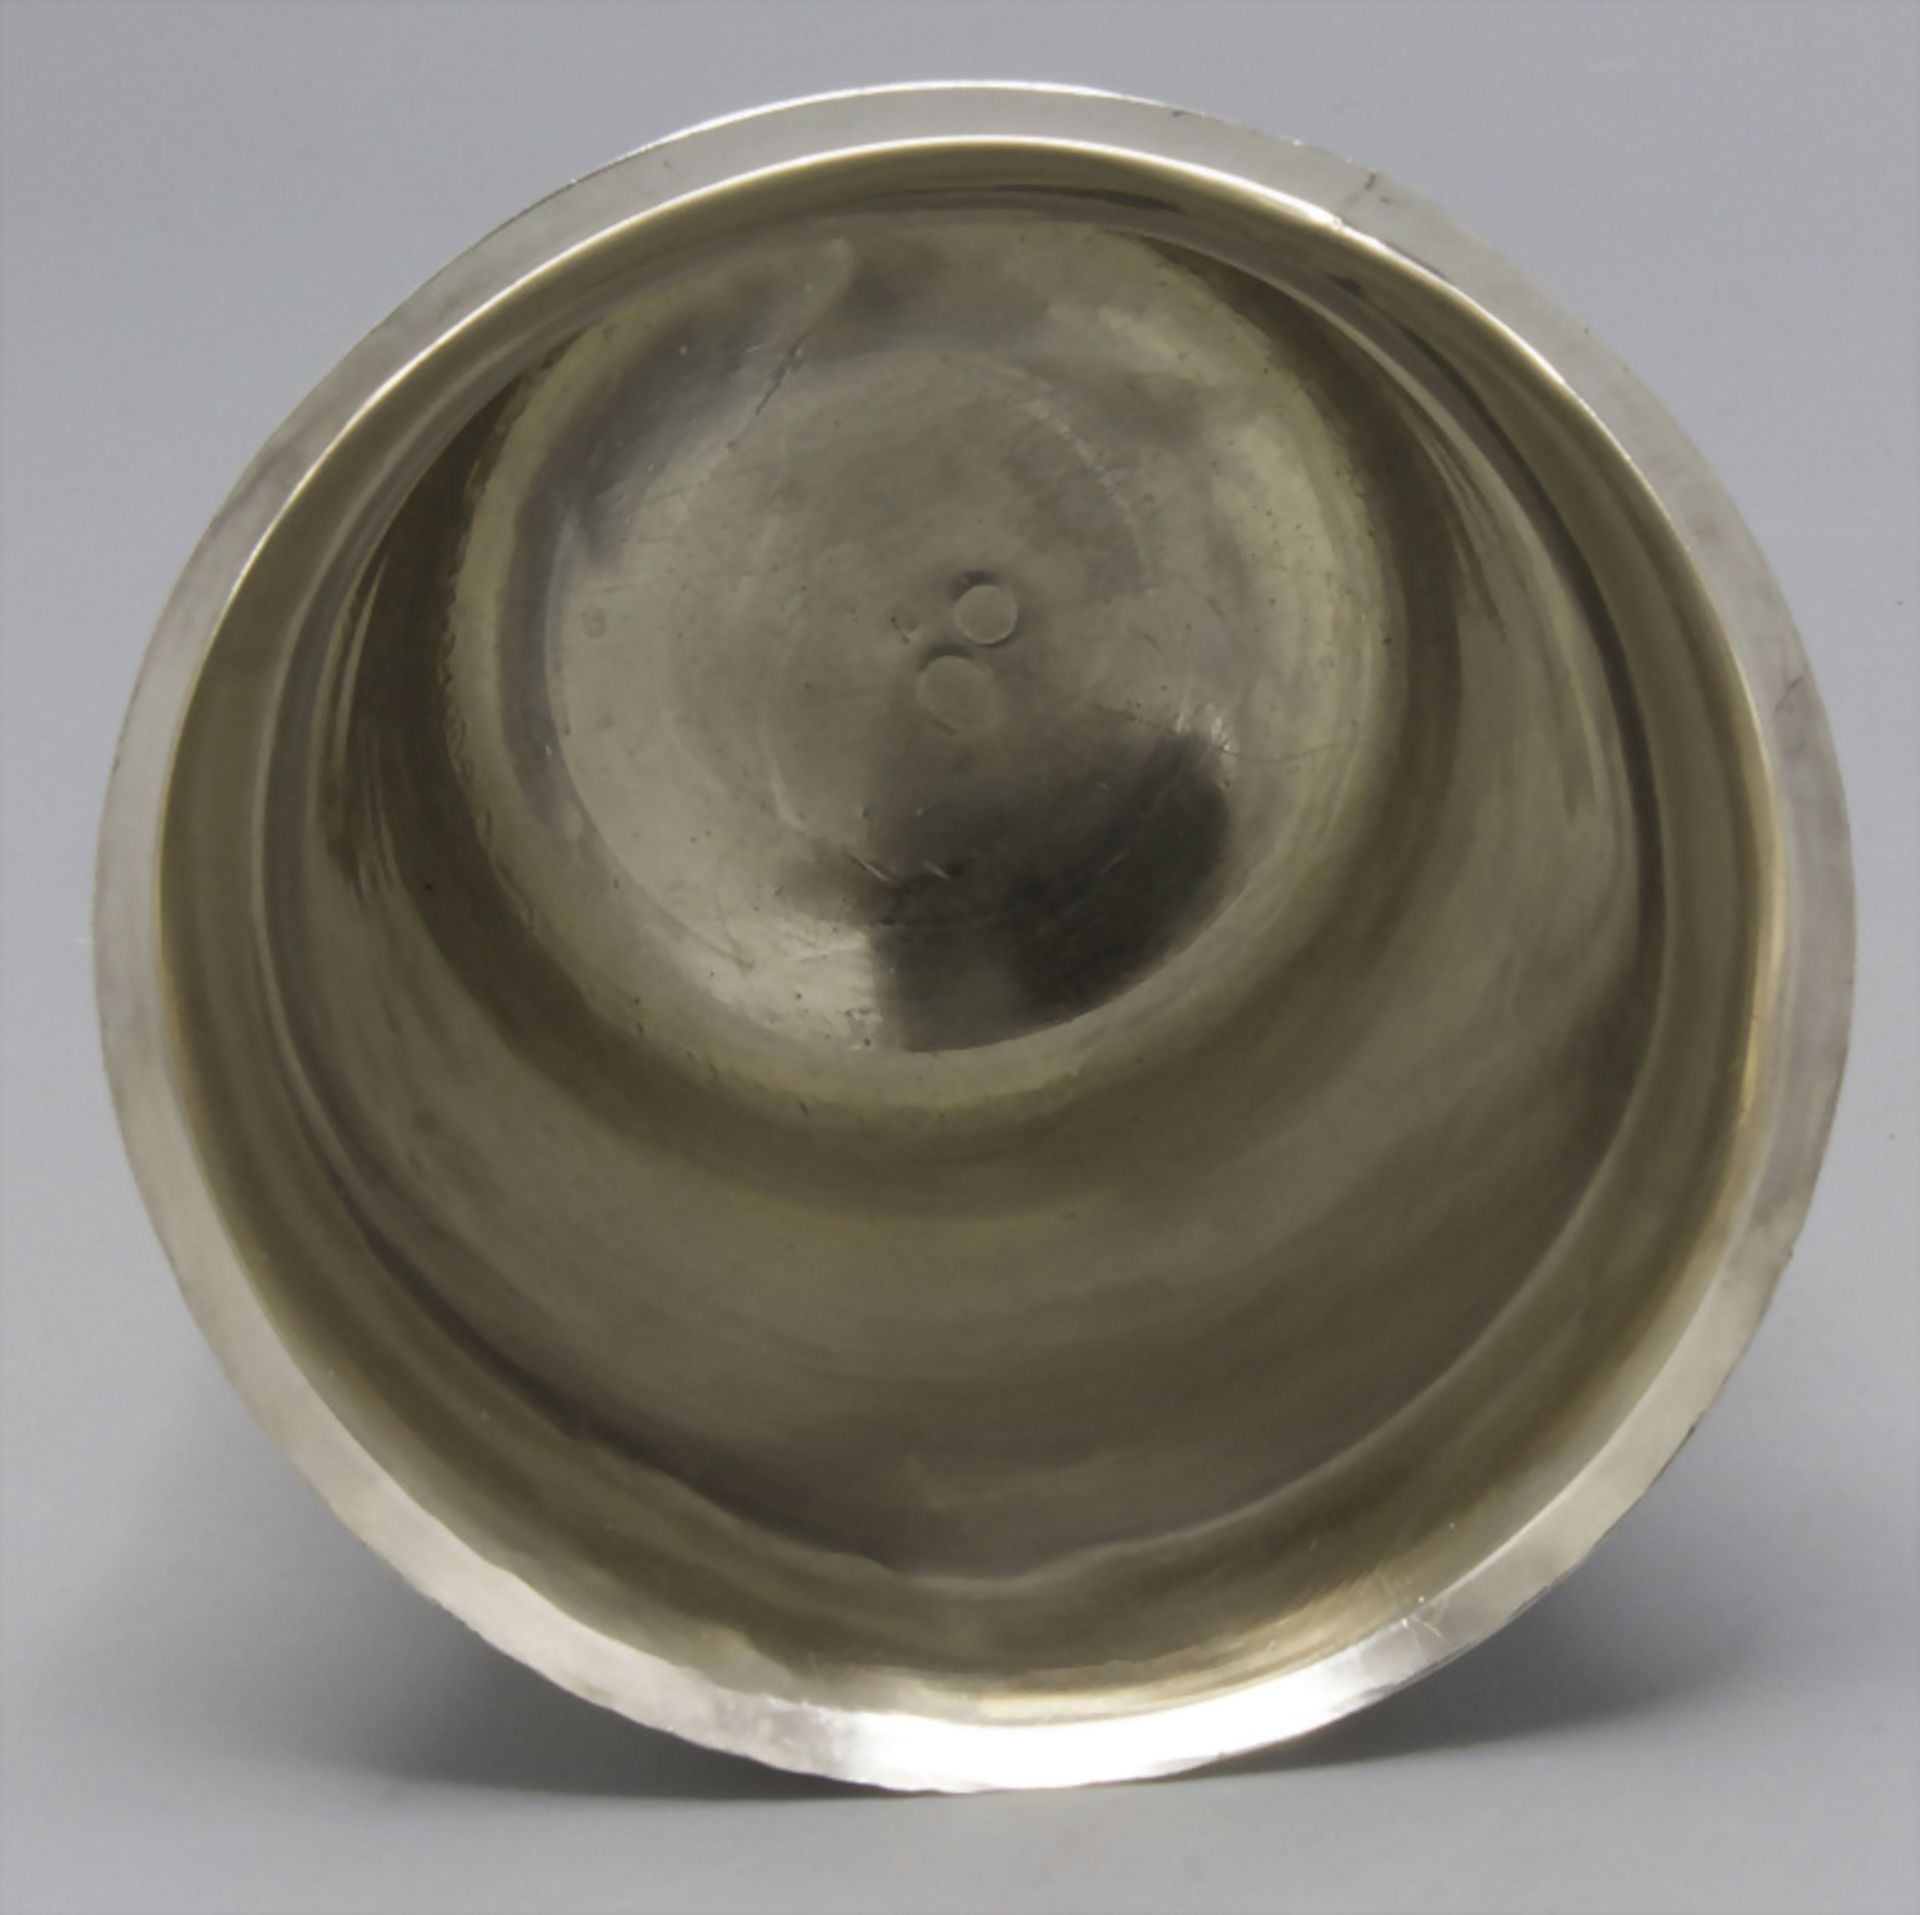 Glockenbecher / A bell shaped silver beaker, Avignon, 1803-1809 - Image 3 of 8